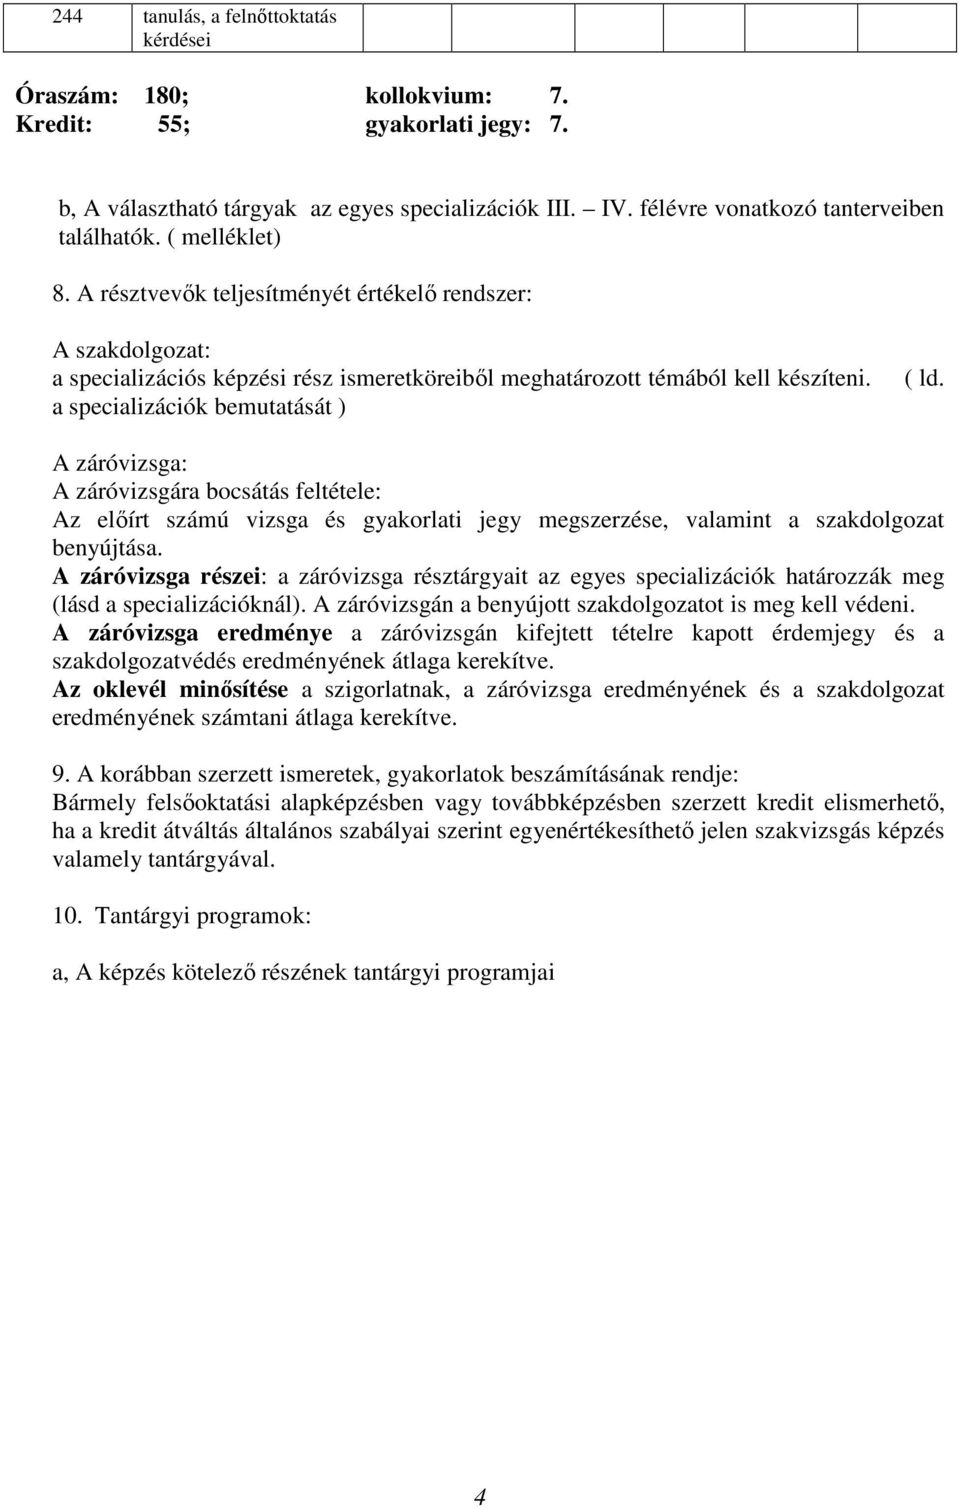 A záróvizsga: A záróvizsgára bocsátás feltétele: Az előírt számú vizsga és gyakorlati jegy megszerzése, valamint a szakdolgozat benyújtása.